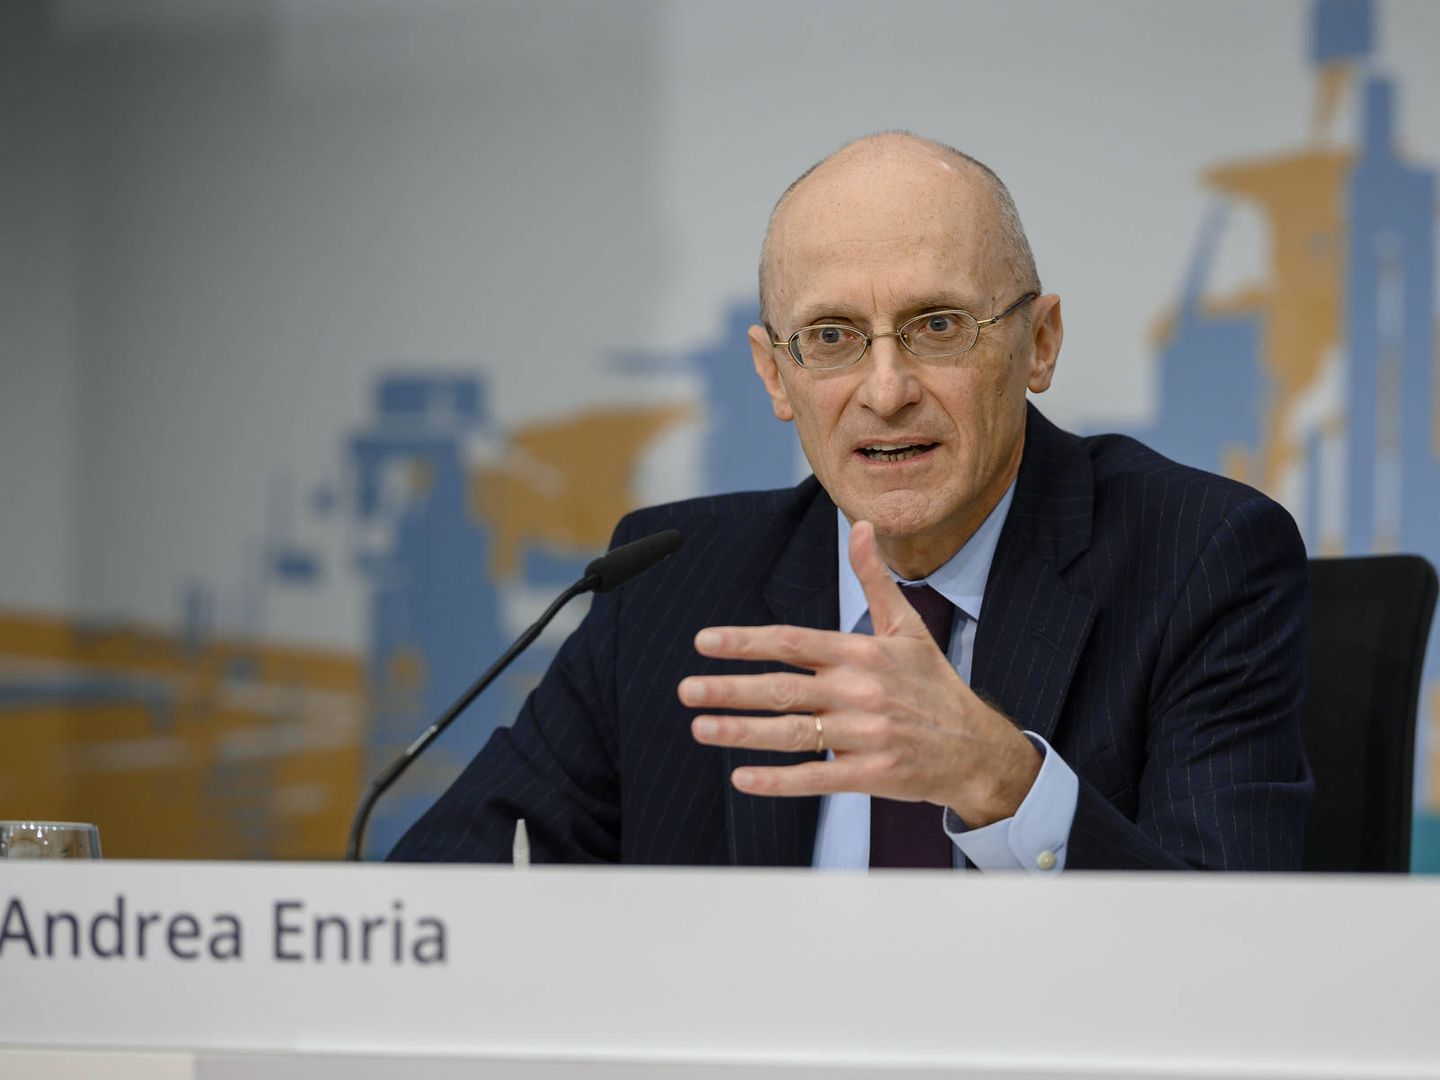 Andrea Enria, presidente del Mecanismo Único de Supervisión (MUS) del BCE. (BCE)